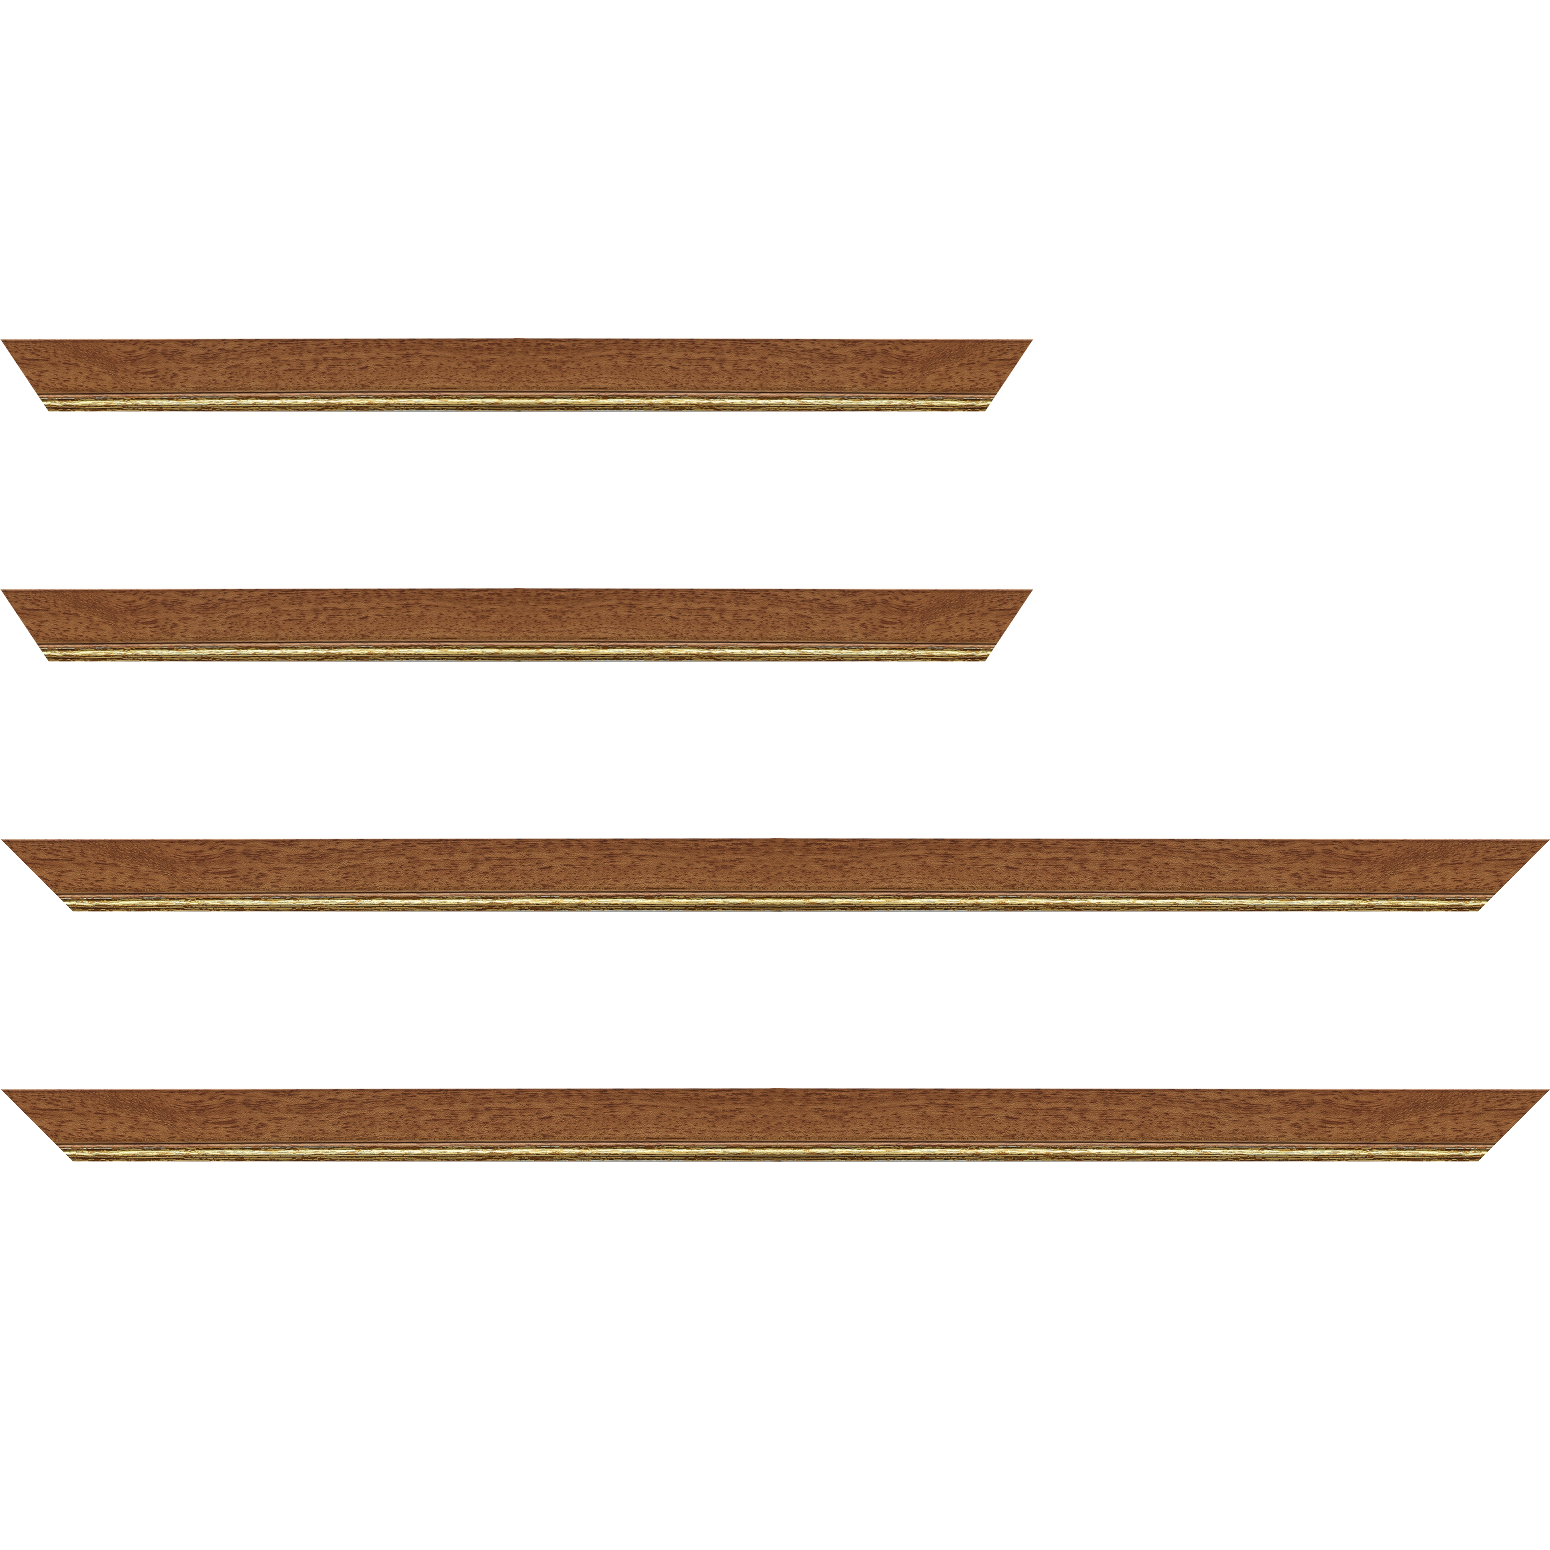 Baguette bois profil plat largeur 2.5cm couleur marron ton bois filet or - 92x60